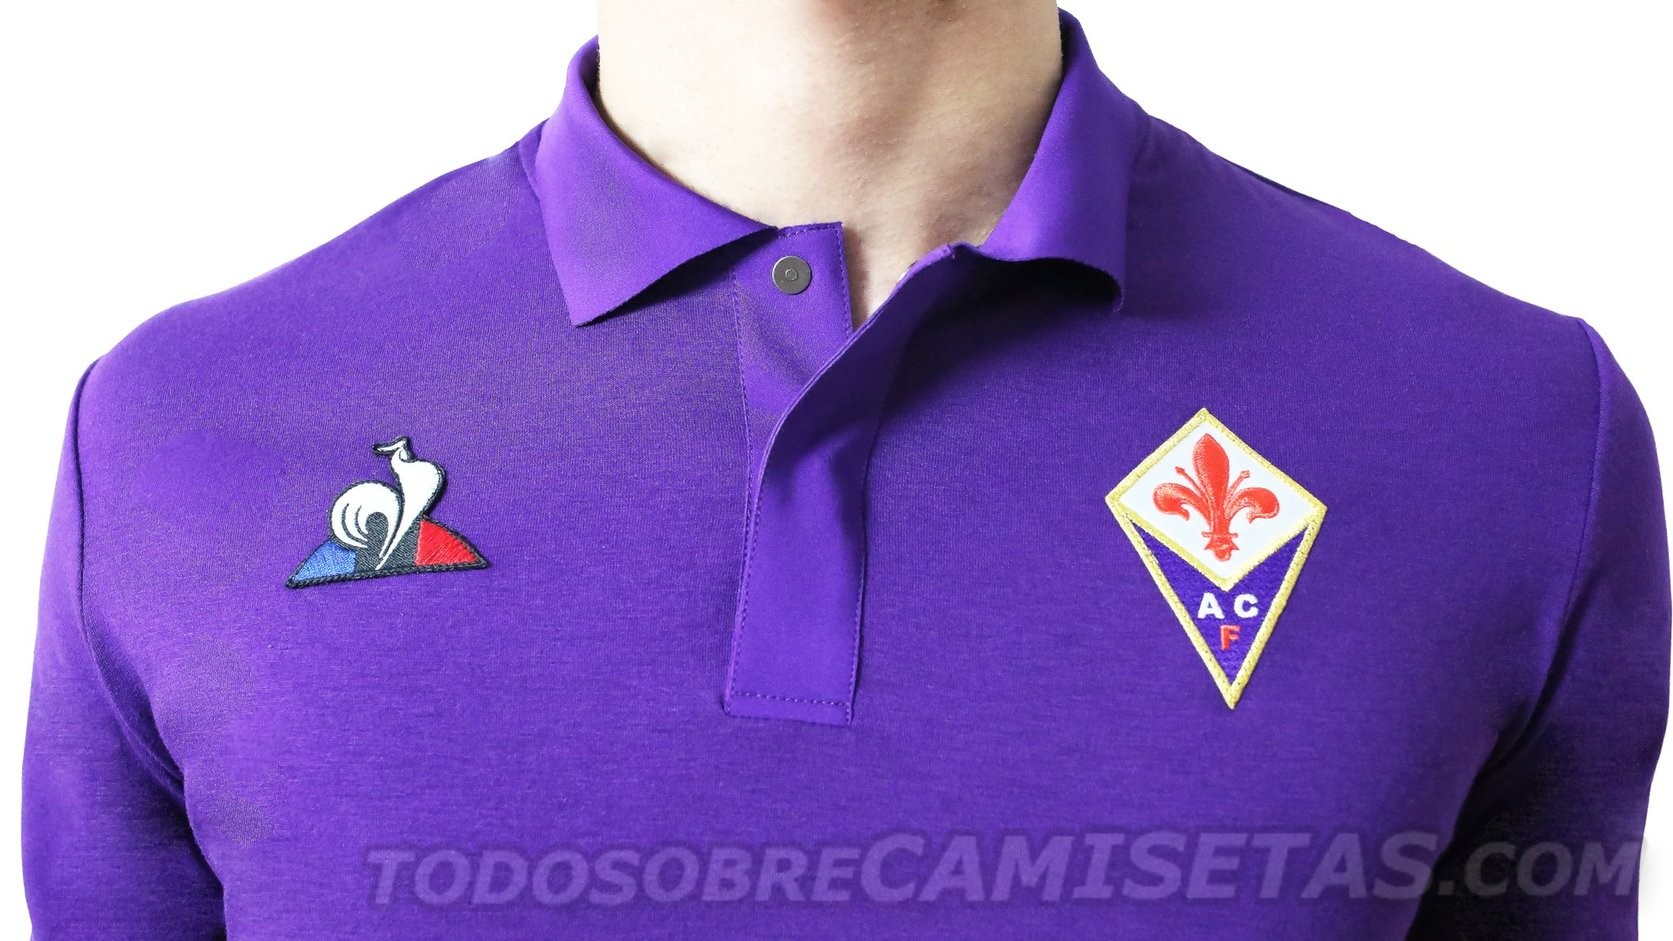 Fiorentina Le Coq Sportif Maglie 2018-19